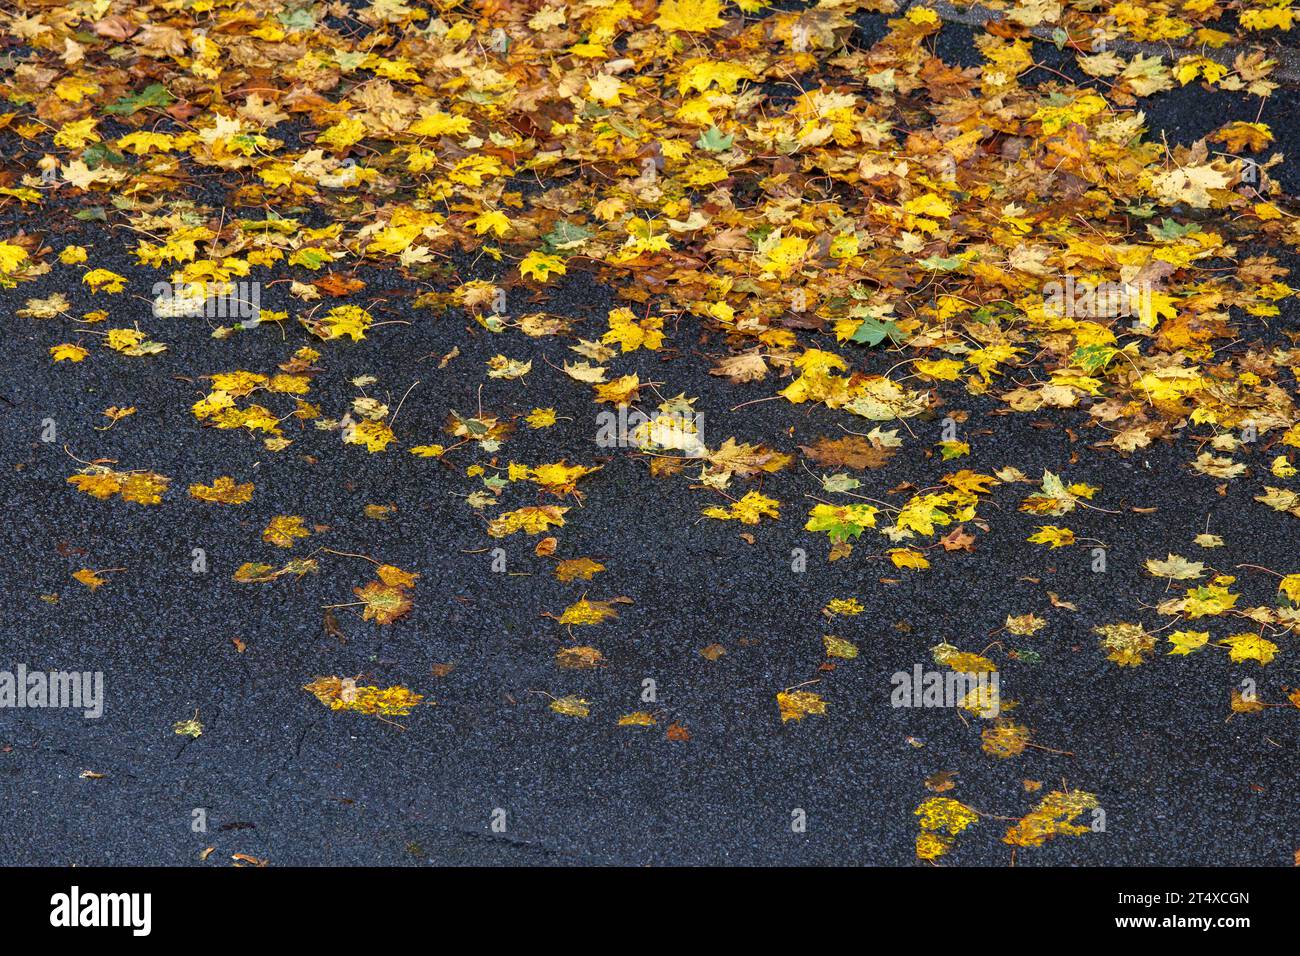 Eine regennasse Straße und Bürgersteig bedeckt mit nassen Herbstblättern, Nordrhein-Westfalen, Deutschland regennasse Straße und Buergersteig bedeckt mit nassem He Stockfoto